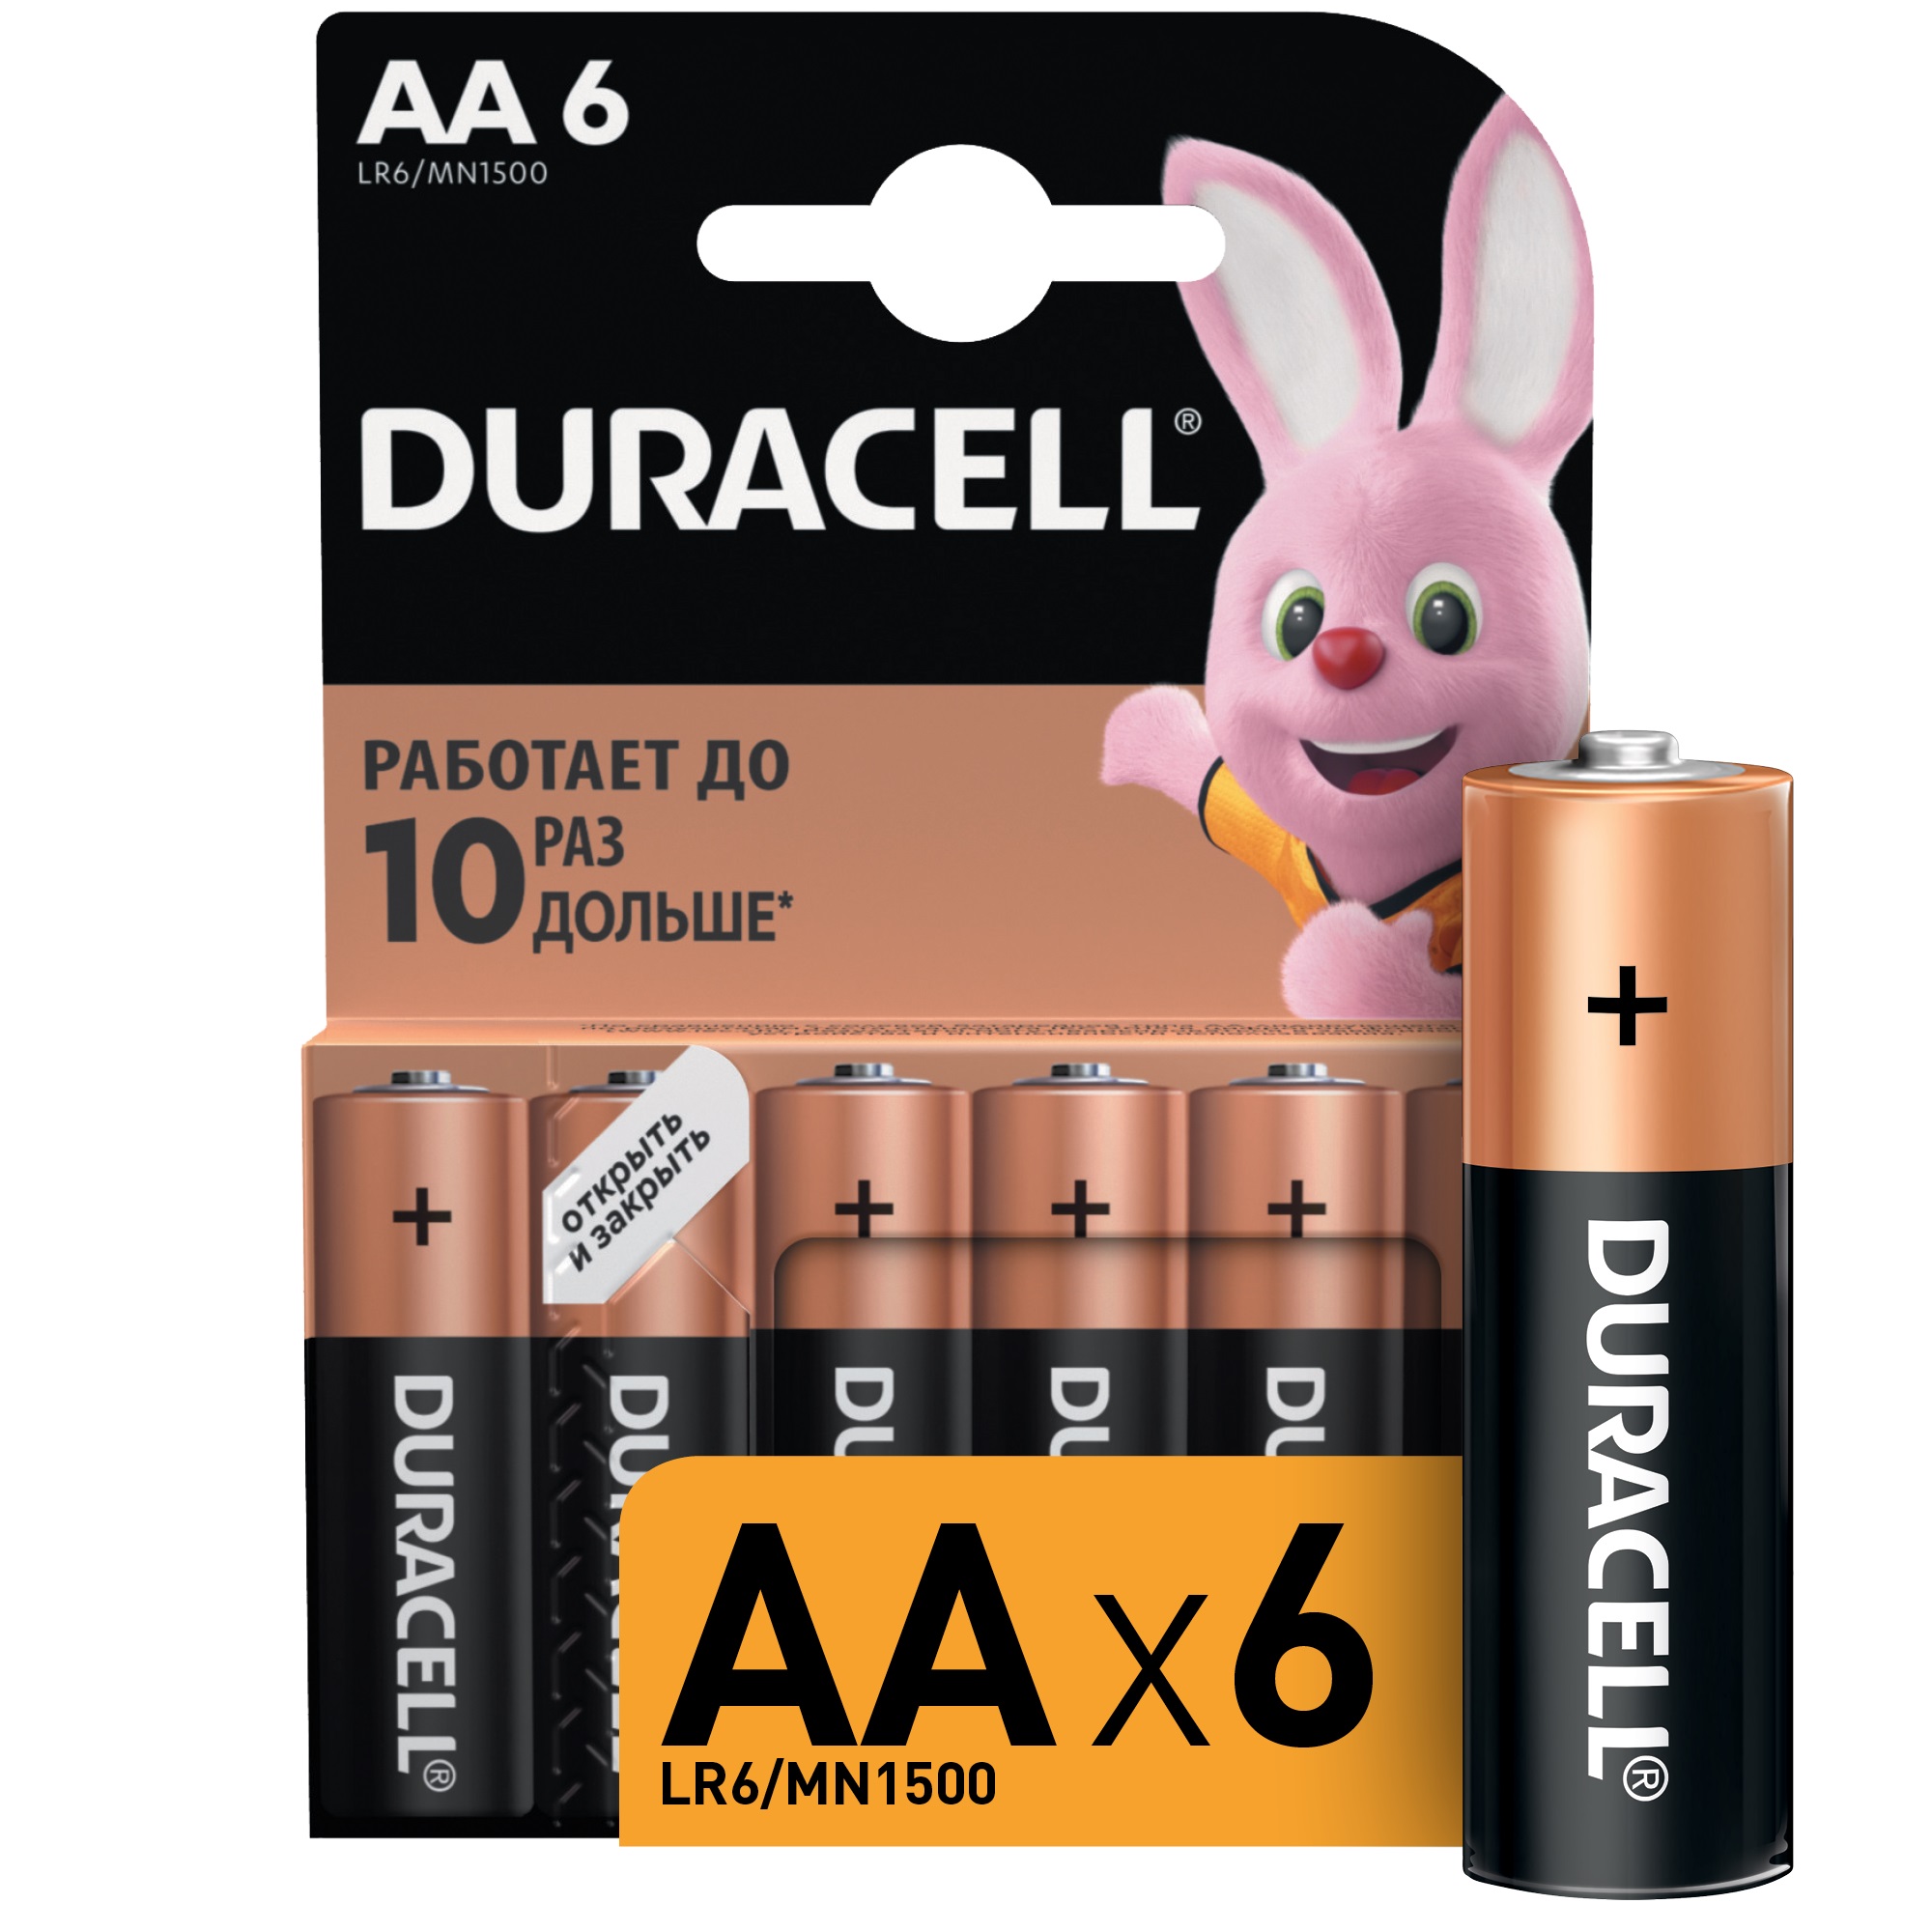 Батарейки Duracell АА 1,5В 6 шт батарейки duracell lr6 12bl basic aa 12шт